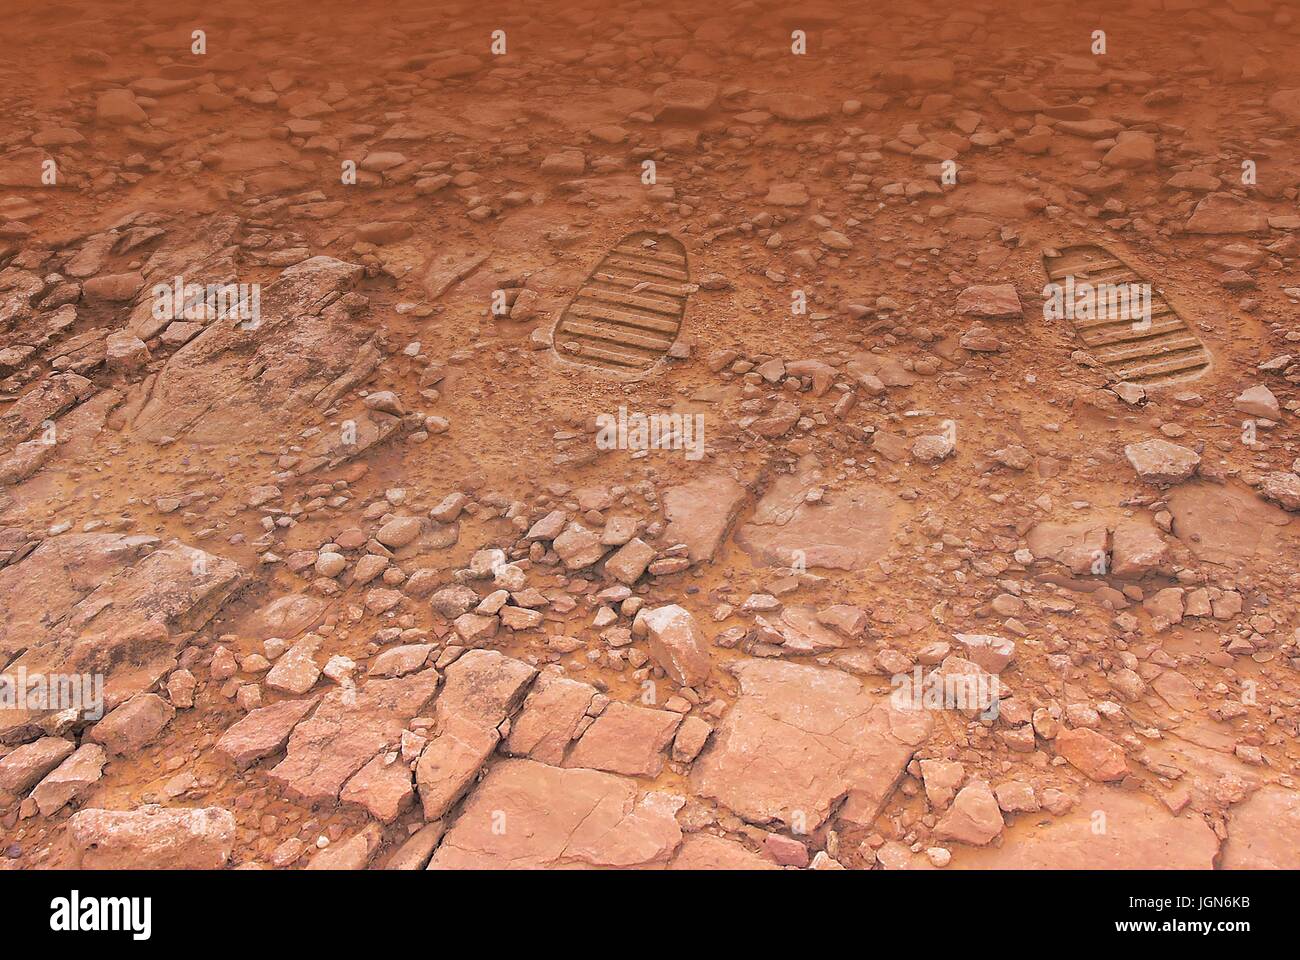 Footprints su Marte, opere d'arte. Una illustrazione di una coppia di stampe di avvio sulla superficie del pianeta rosso, forse lasciato alle spalle da futuri astronauti â€" o i turisti. Una spedizione umana su Marte sarebbe una costosa e pericolosa ma gratificante venture. Foto Stock